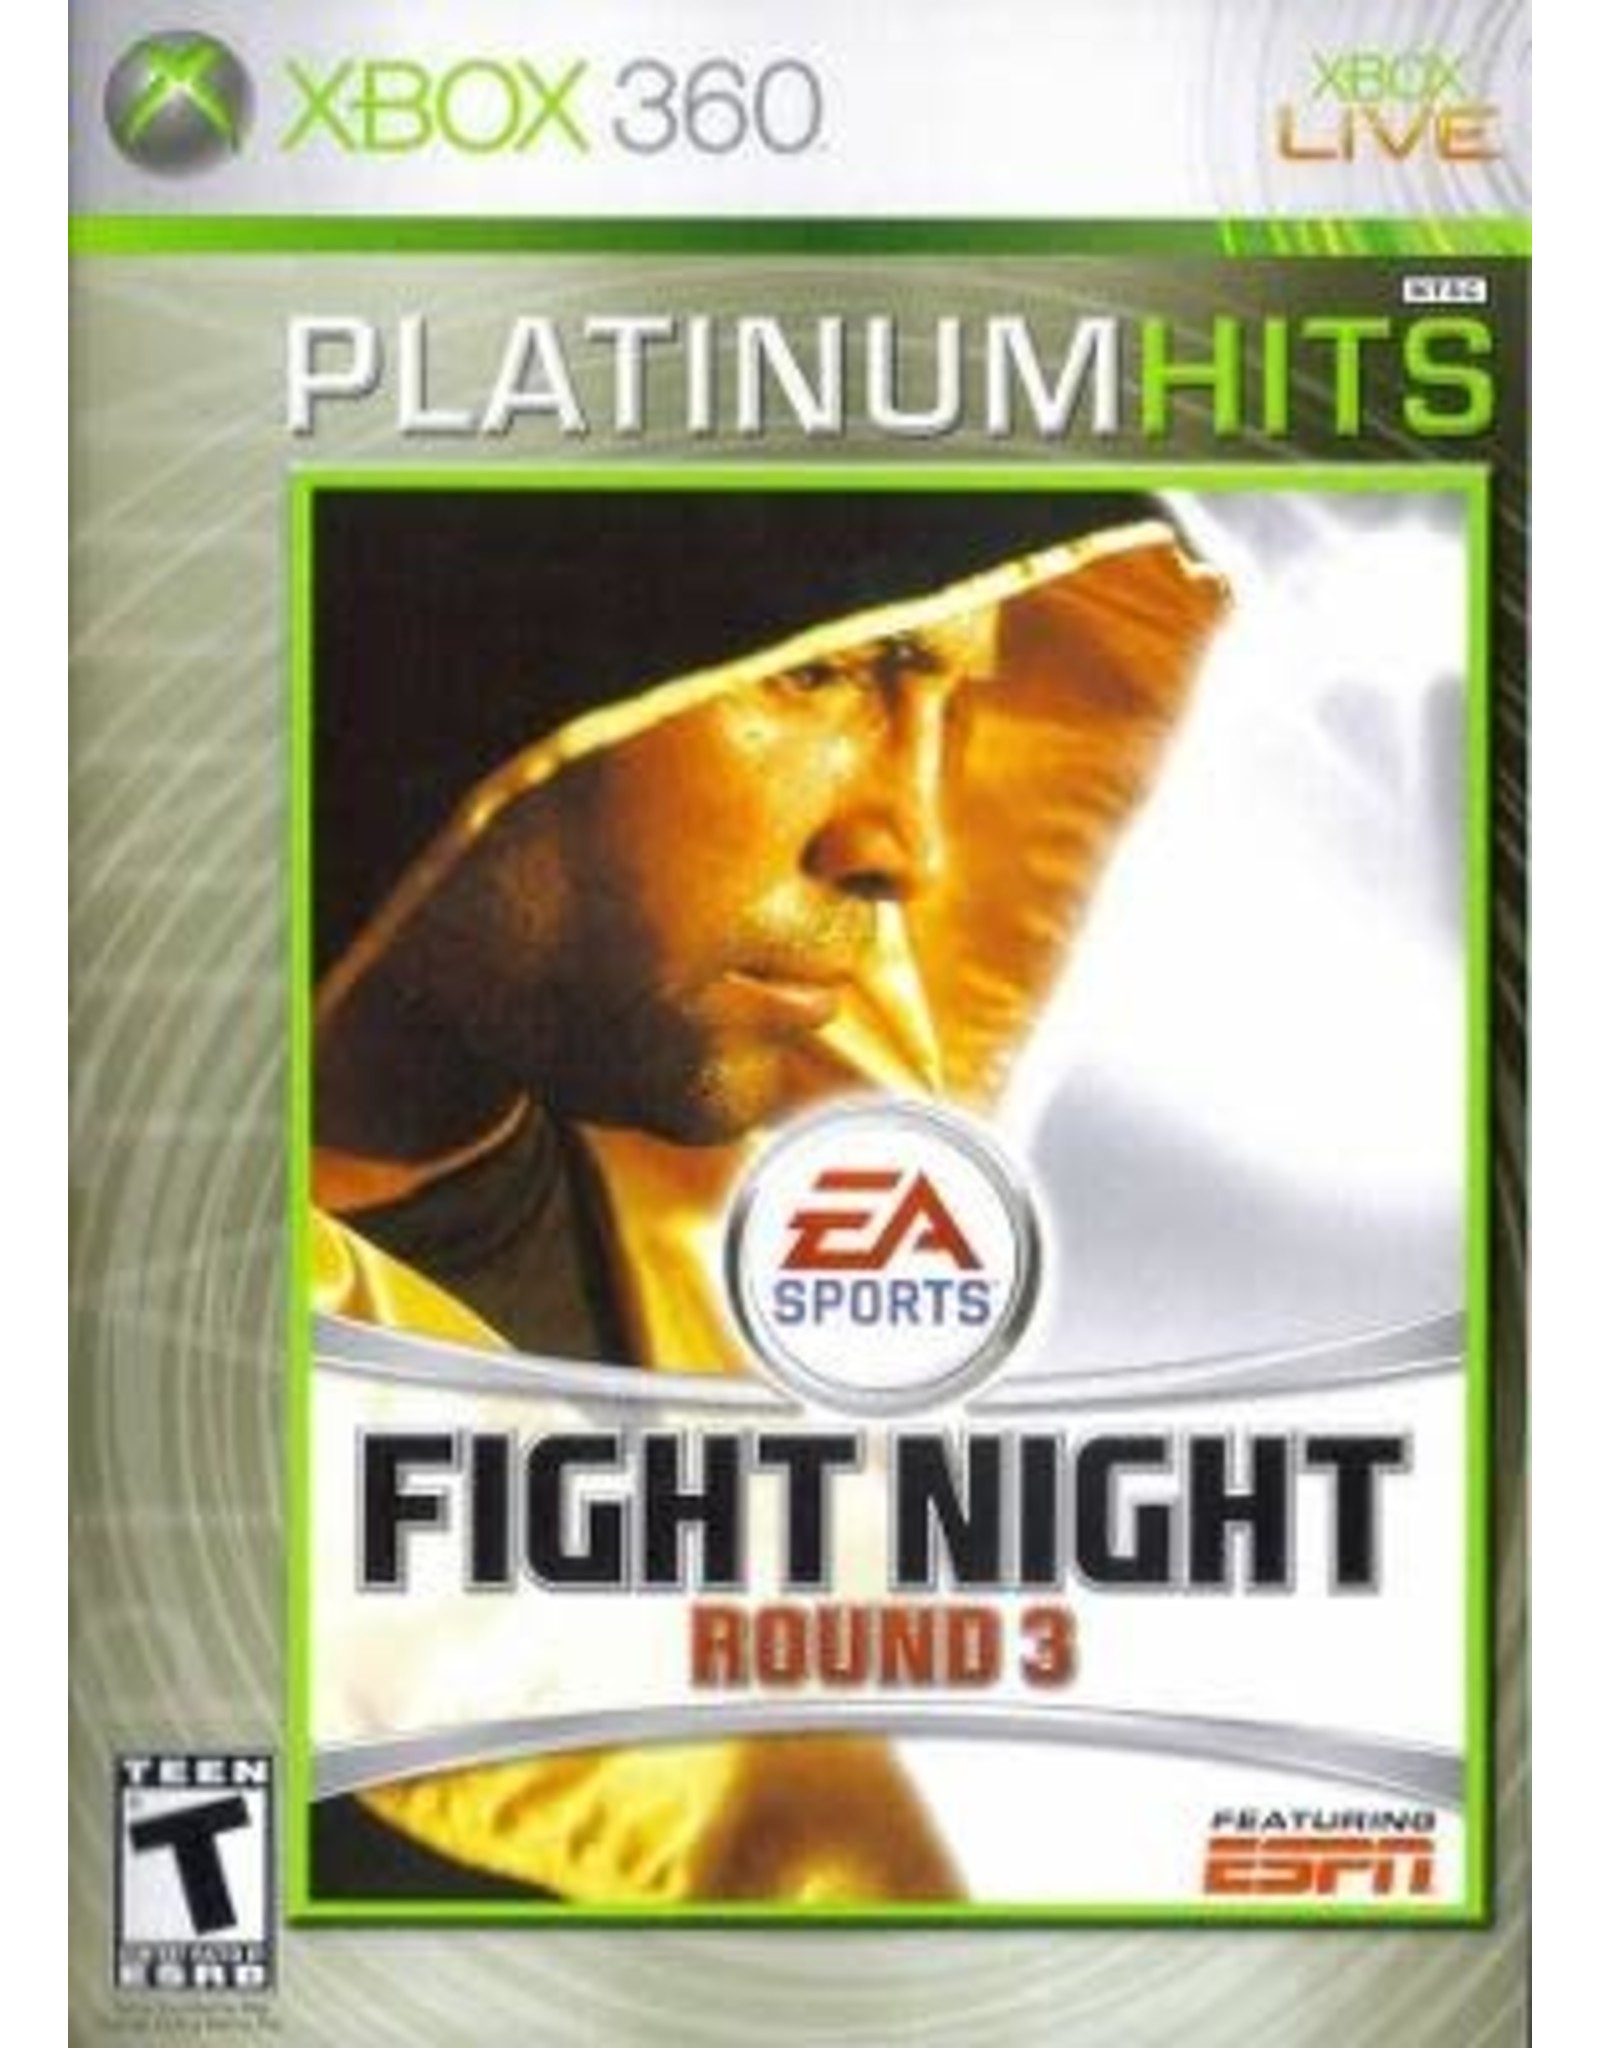 Xbox 360 Fight Night Round 3 (Platinum Hits, CiB)